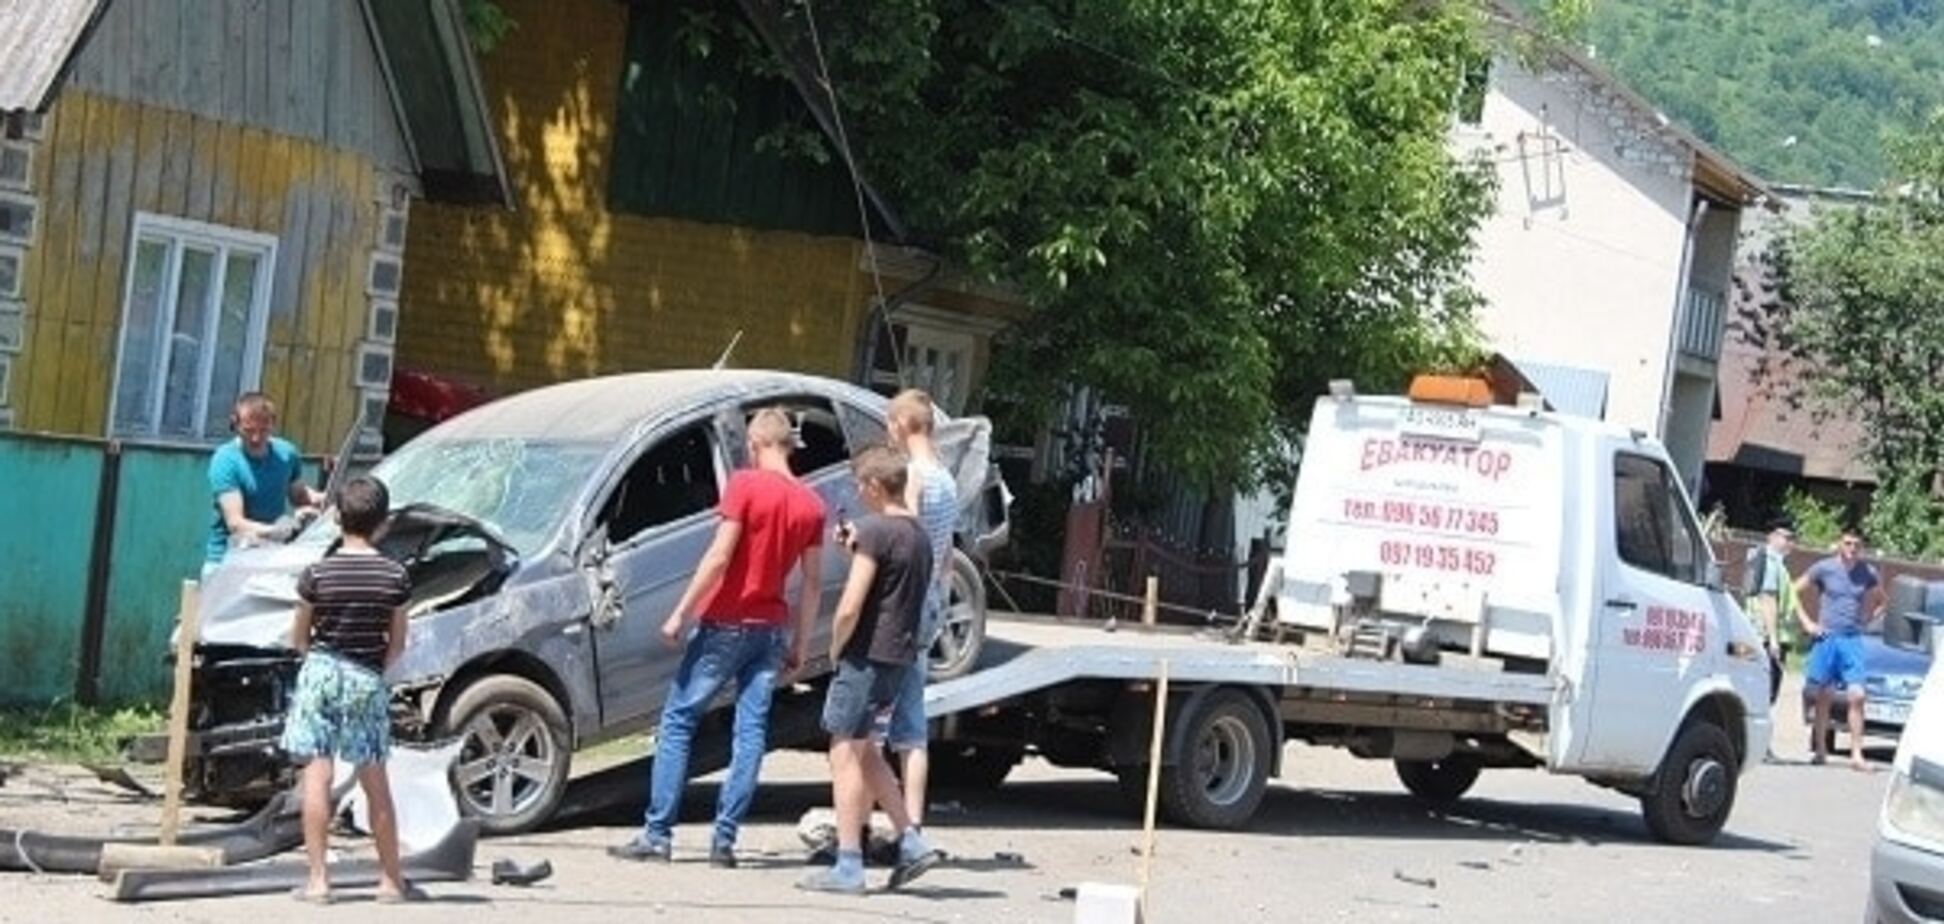 У Дубовому Mitsubishi Lancer смертельно травмувала 80-літнього чоловіка і врізалася в стовп (ФОТО)